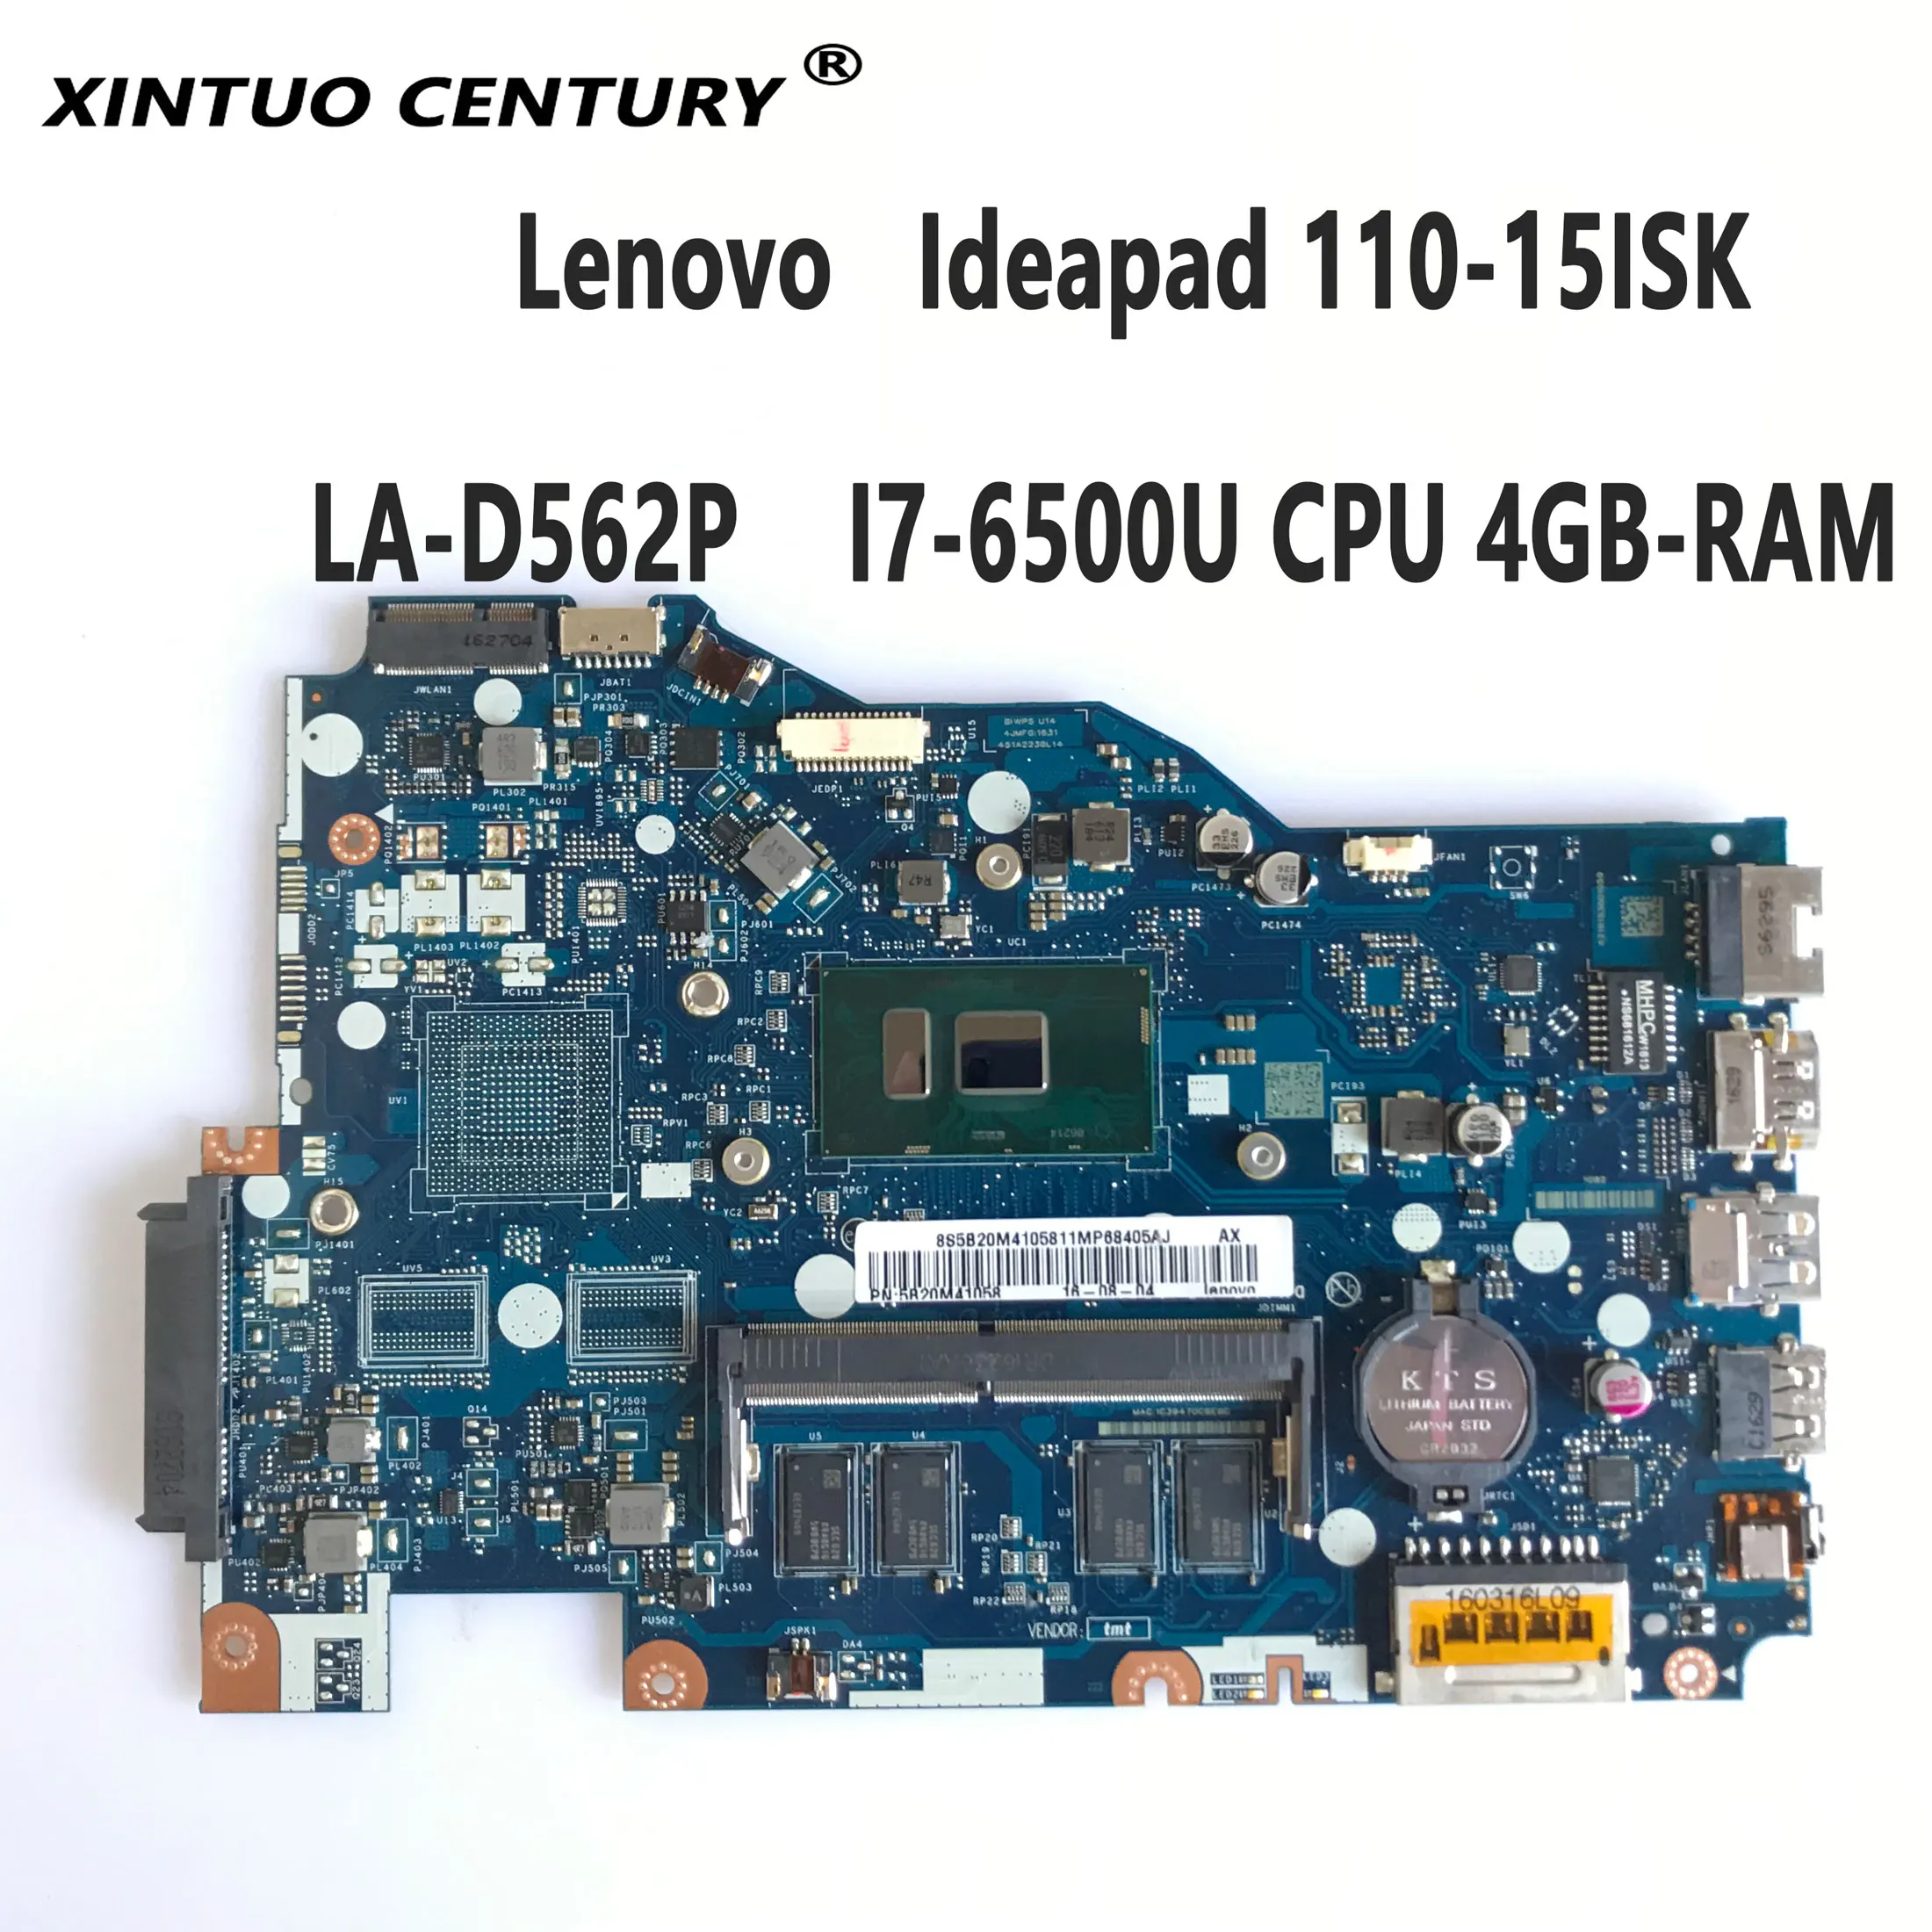 

Высококачественная семейная материнская плата для ноутбука Lenovo Ideapad 110-15ISK, материнская плата для ноутбука со стандартным процессором 4 Гб О...